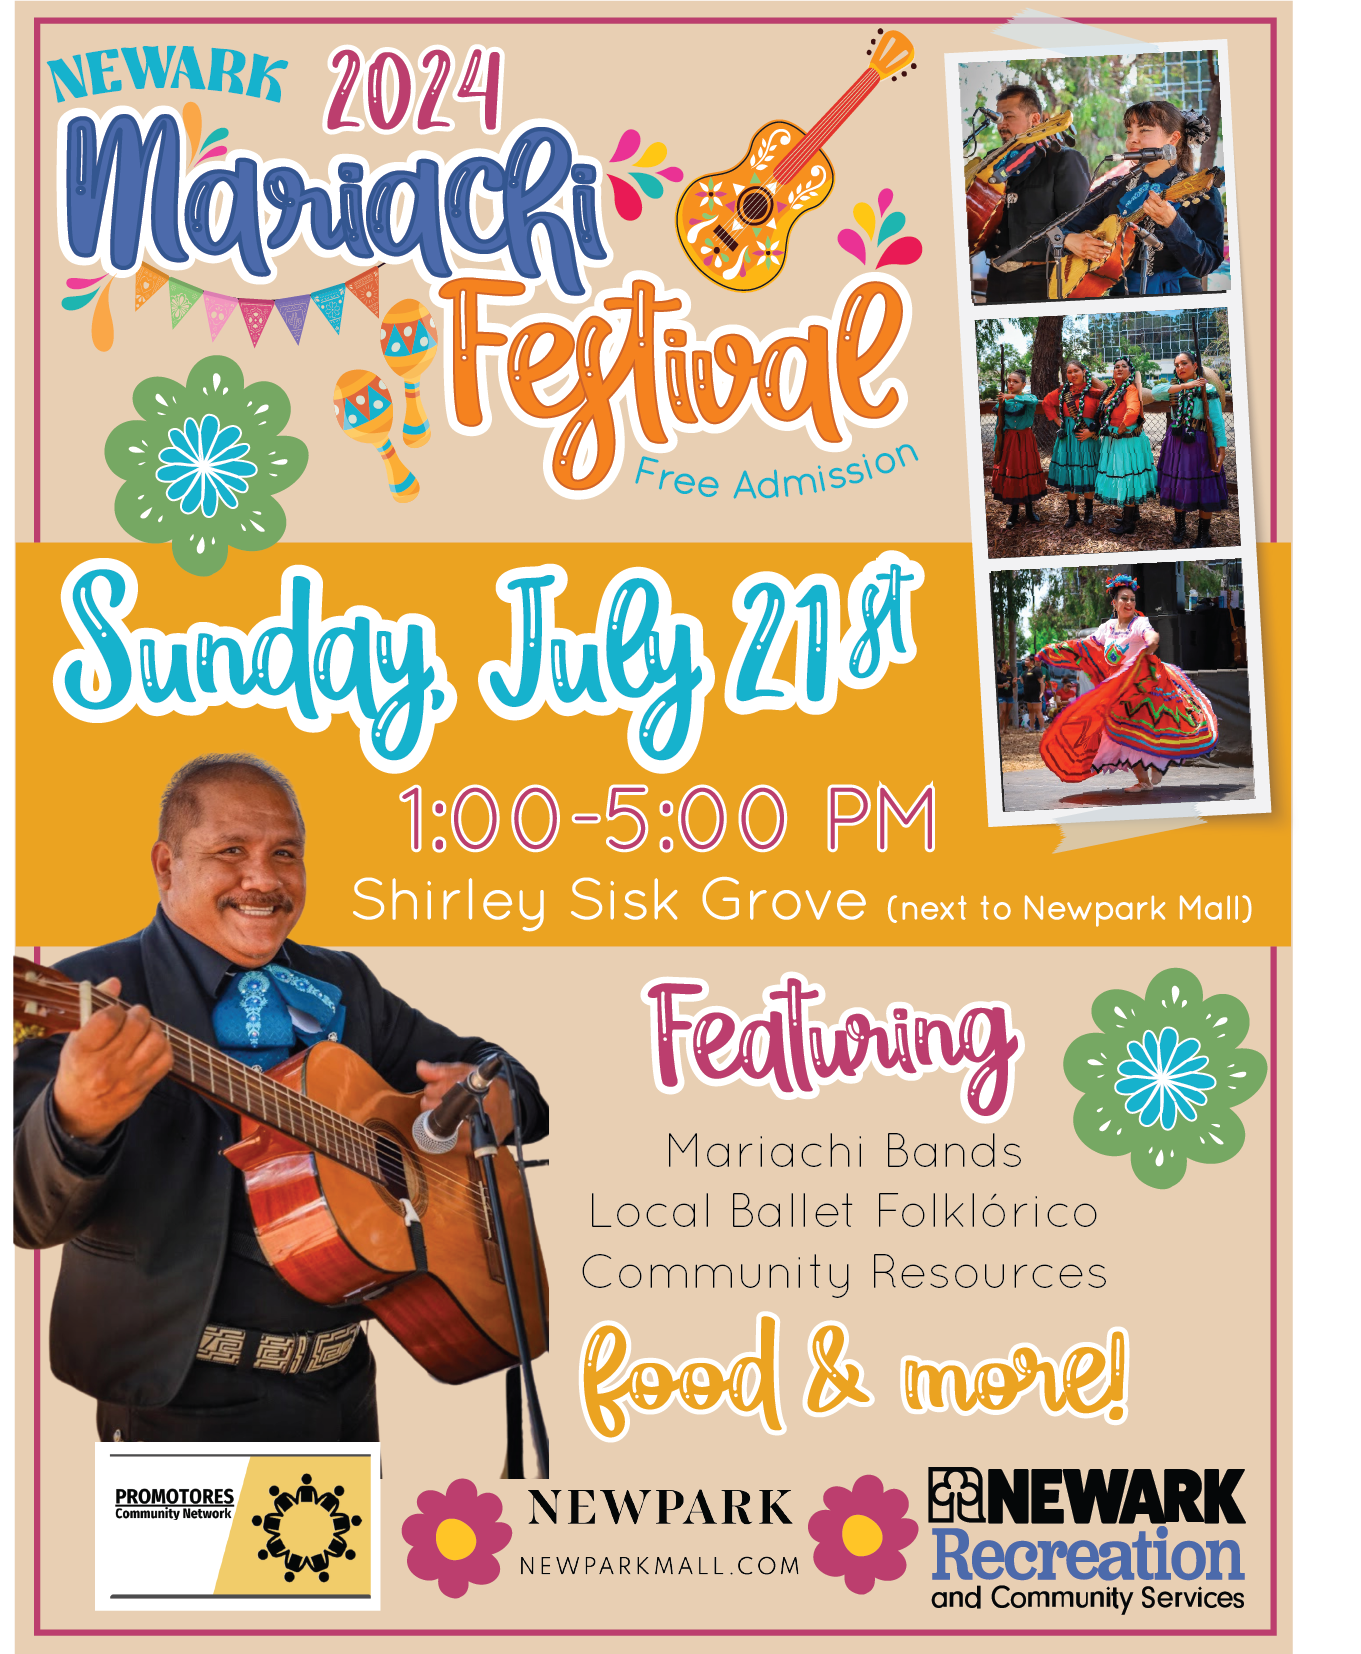 Newark Rec presents the 10th Mariachi Festival